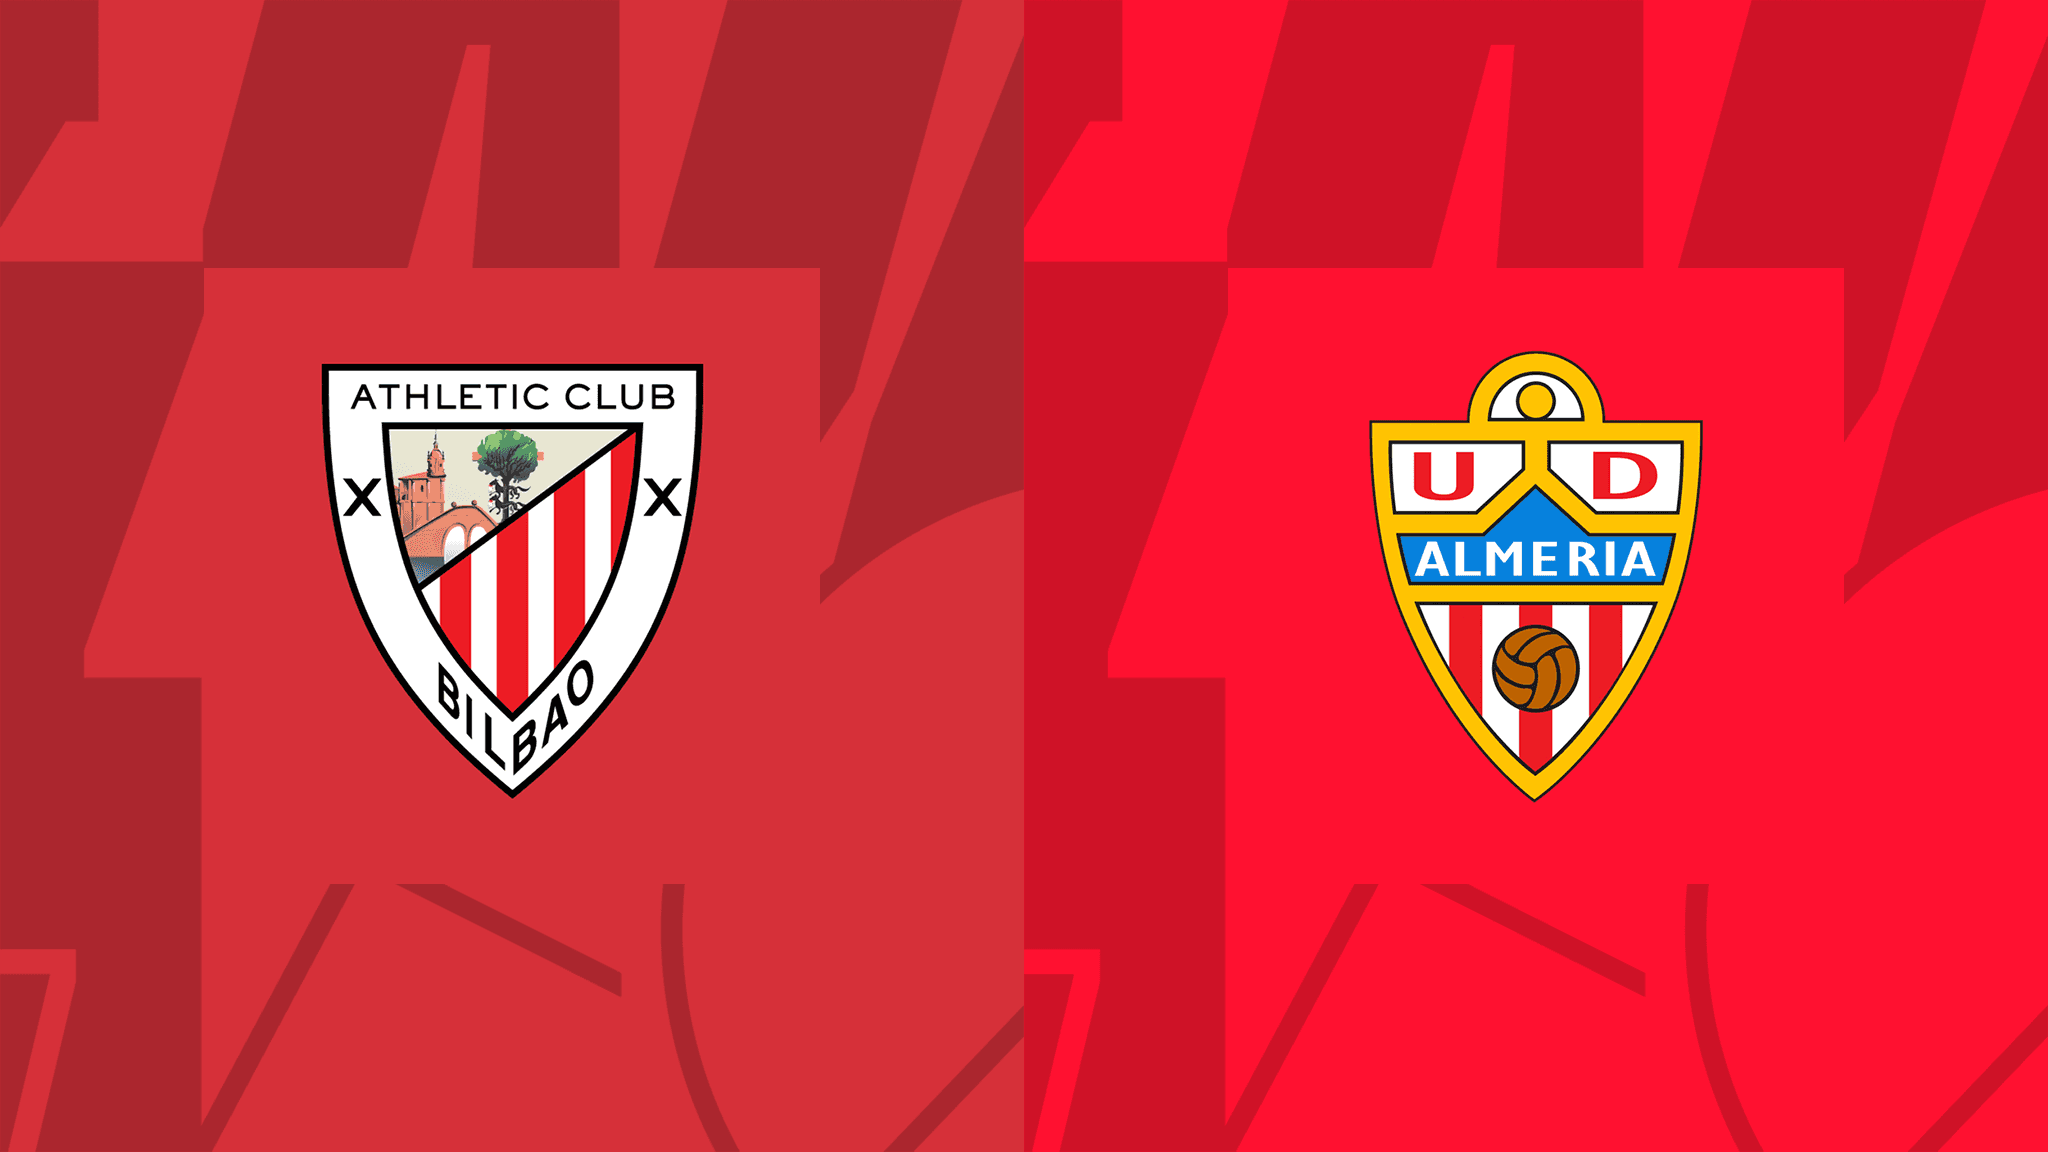  مشاهدة مباراة أتلتيك بيلباو و ألميريا بث مباشر 30/09/2022 Athletic Club vs Almería